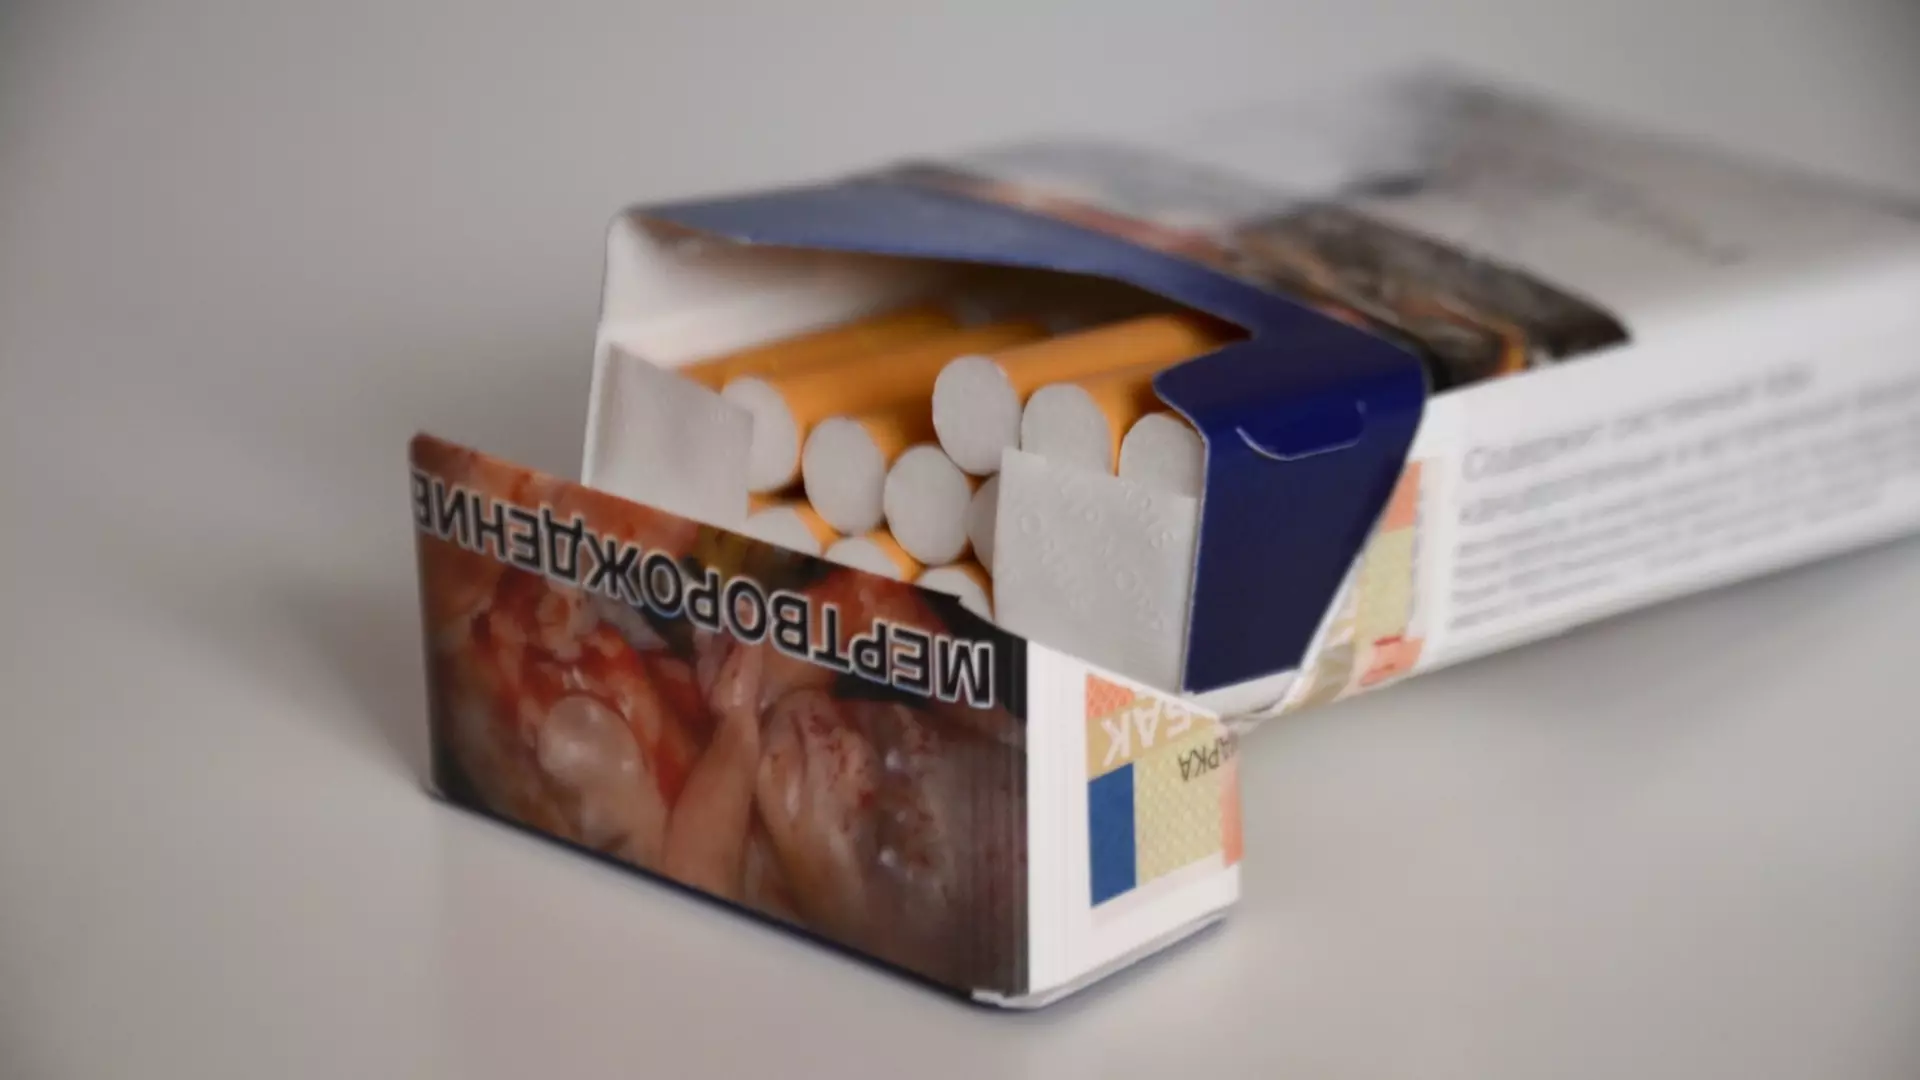 На жительницу Башкирии возбудили уголовное дело за продажу контрафактных сигарет